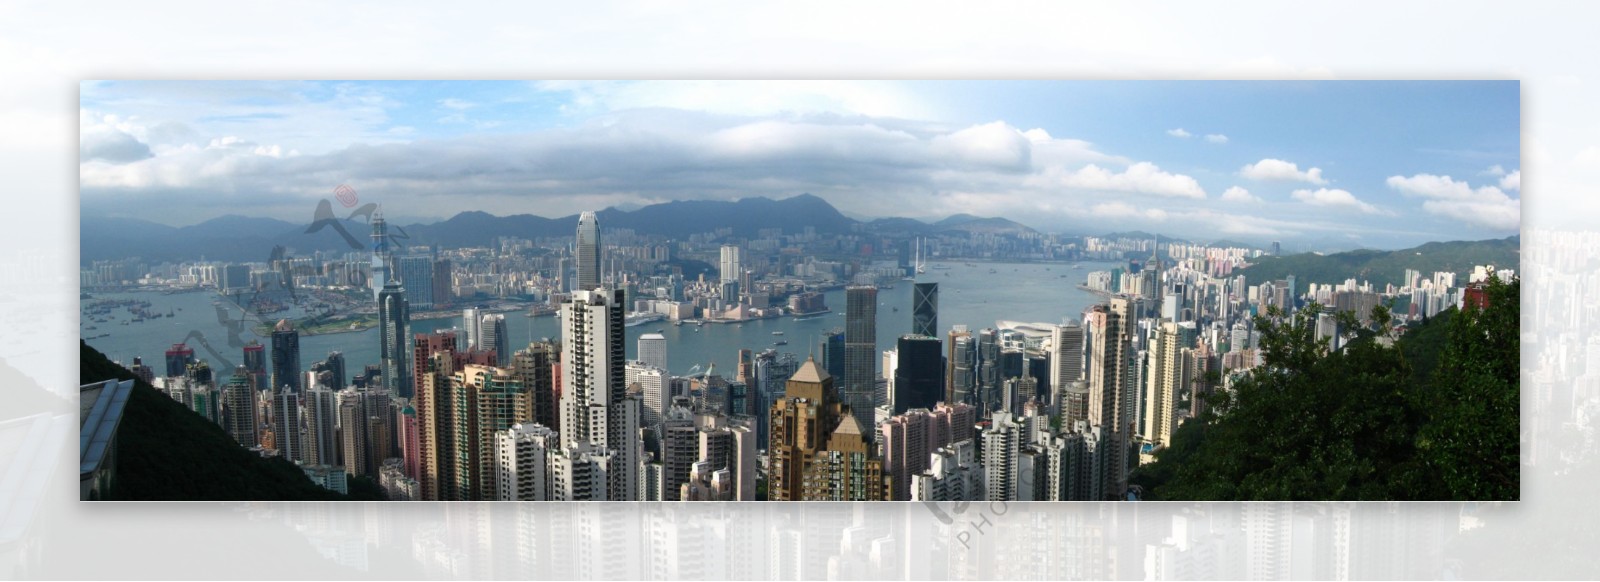 香港维多利亚港日景图片